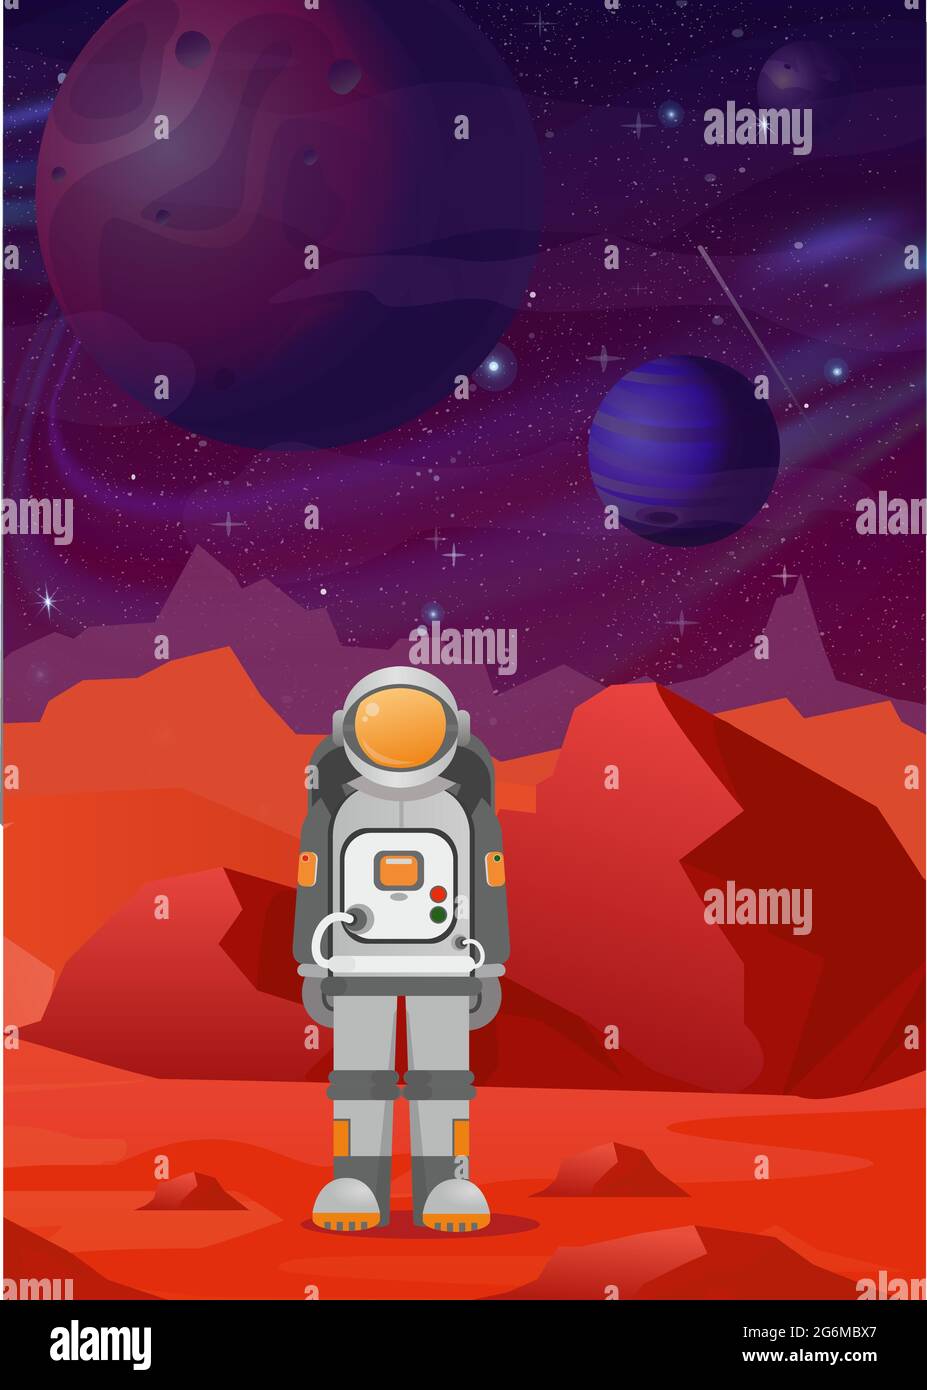 Vektor-Illustrationen von Astronauten auf dem Mars. Rote Berge Landschaft auf dunklen Raum mit Planeten Hintergrund. astronomie, Weltraumforschung, Kolonisation Stock Vektor